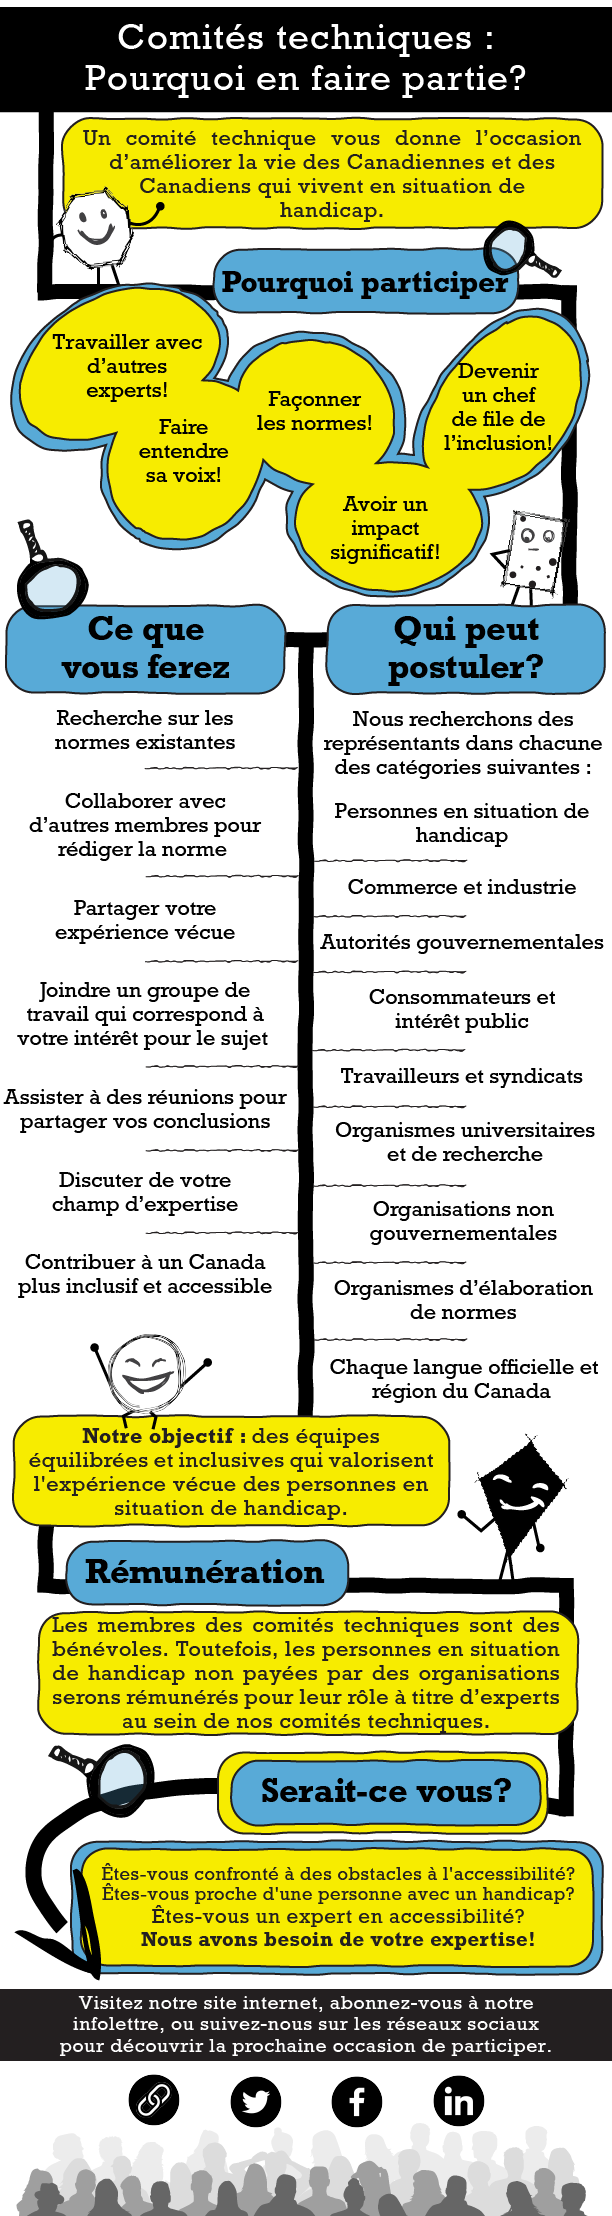 Infographie qui explique pourquoi les Canadiens devraient se joindre aux comités techniques des Normes d'accessibilité Canada. Le texte complet est disponible au bas de cette page web.